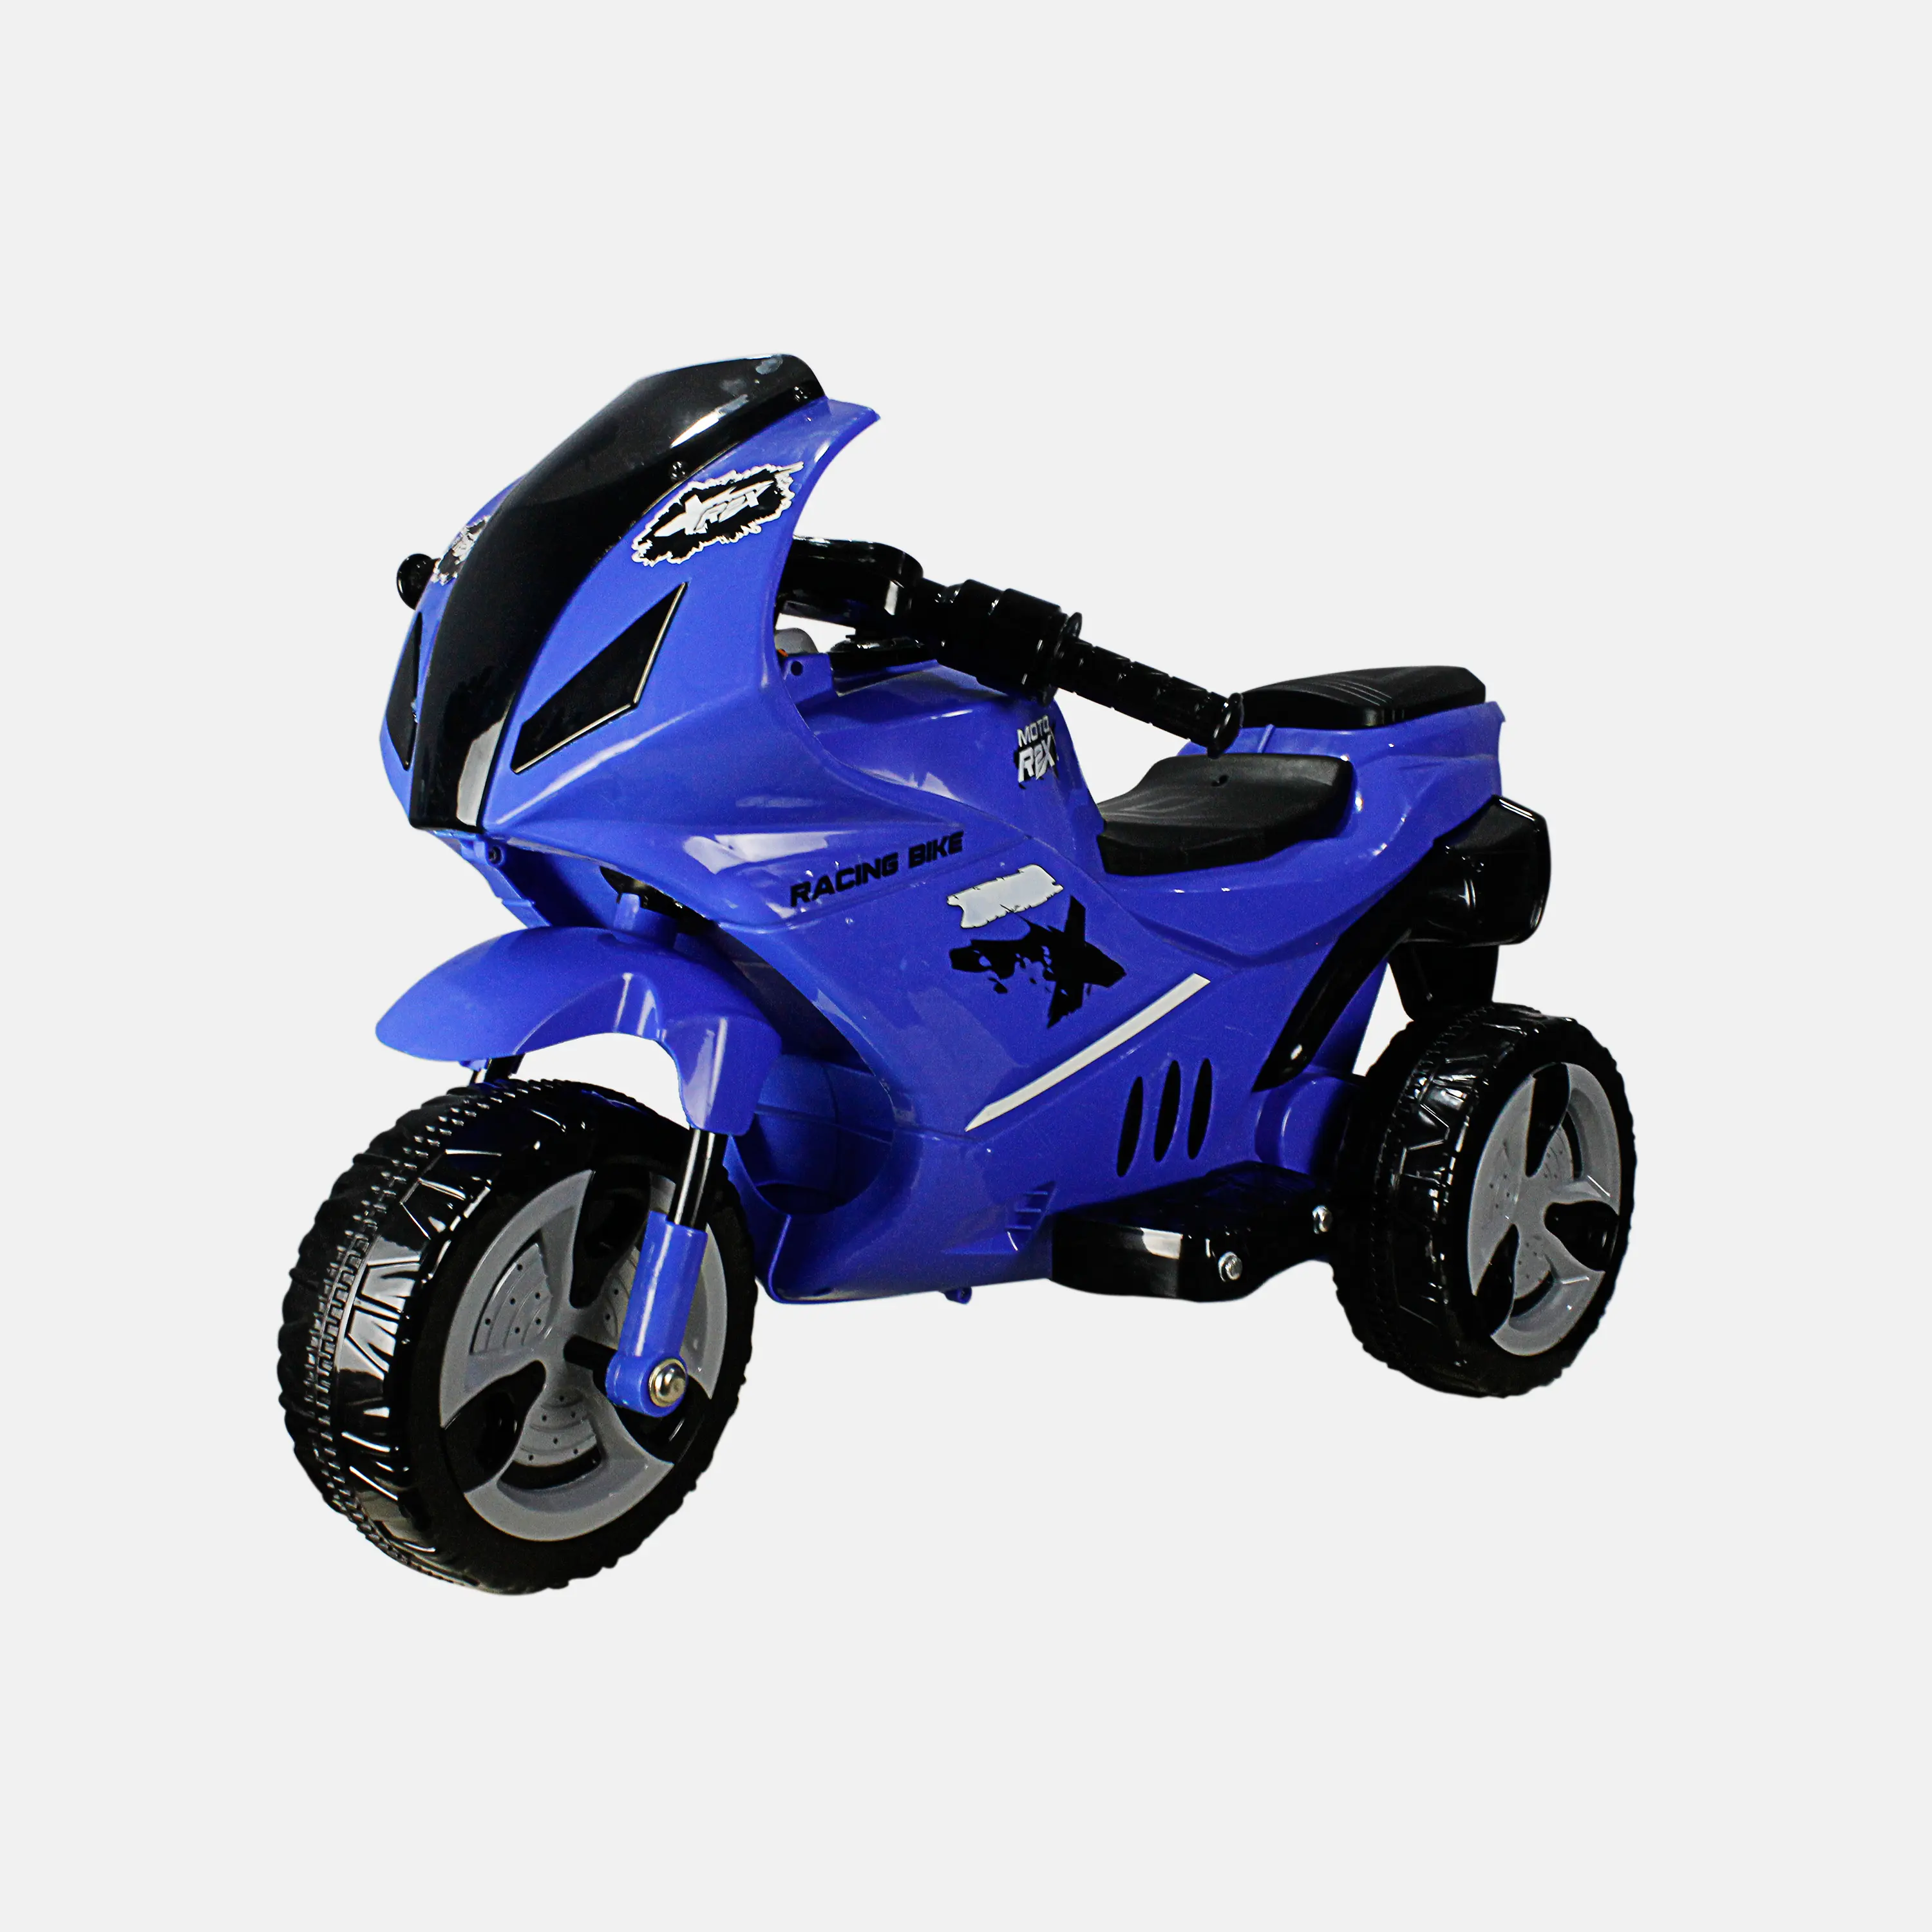 Voitures à pédales de type 24v meilleure fonctionnalité batterie au prix le plus bas utilisant le fournisseur d'énergie R2X moto électrique pour enfants